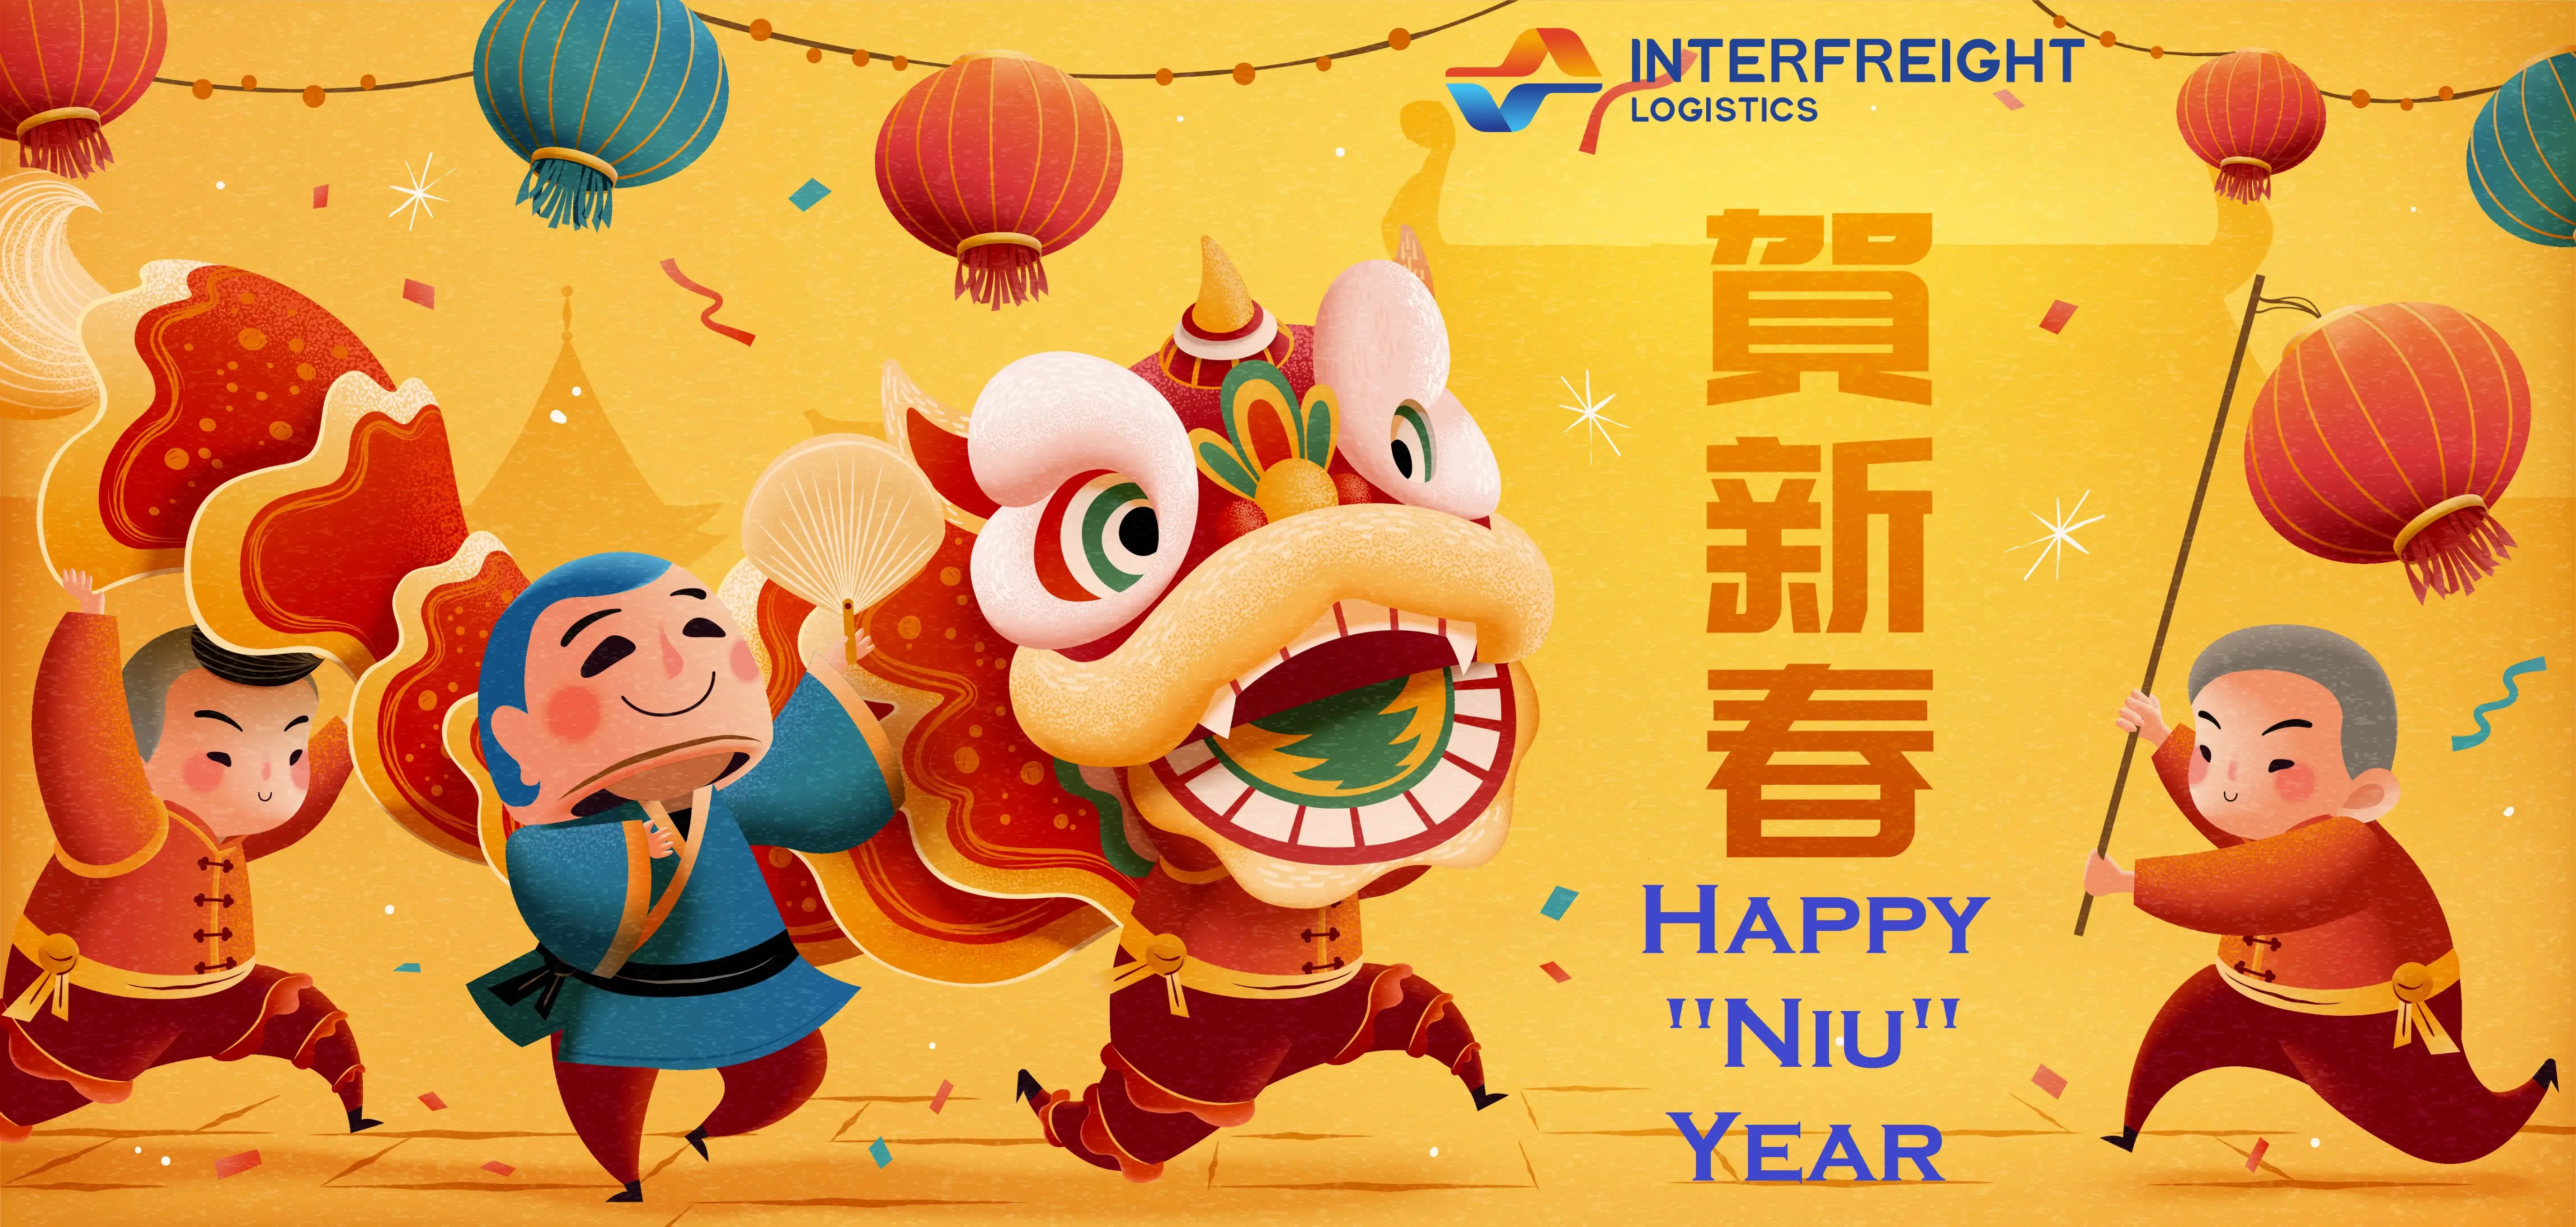 Happy “Niu” Year, Gong Xi Fa Cai!